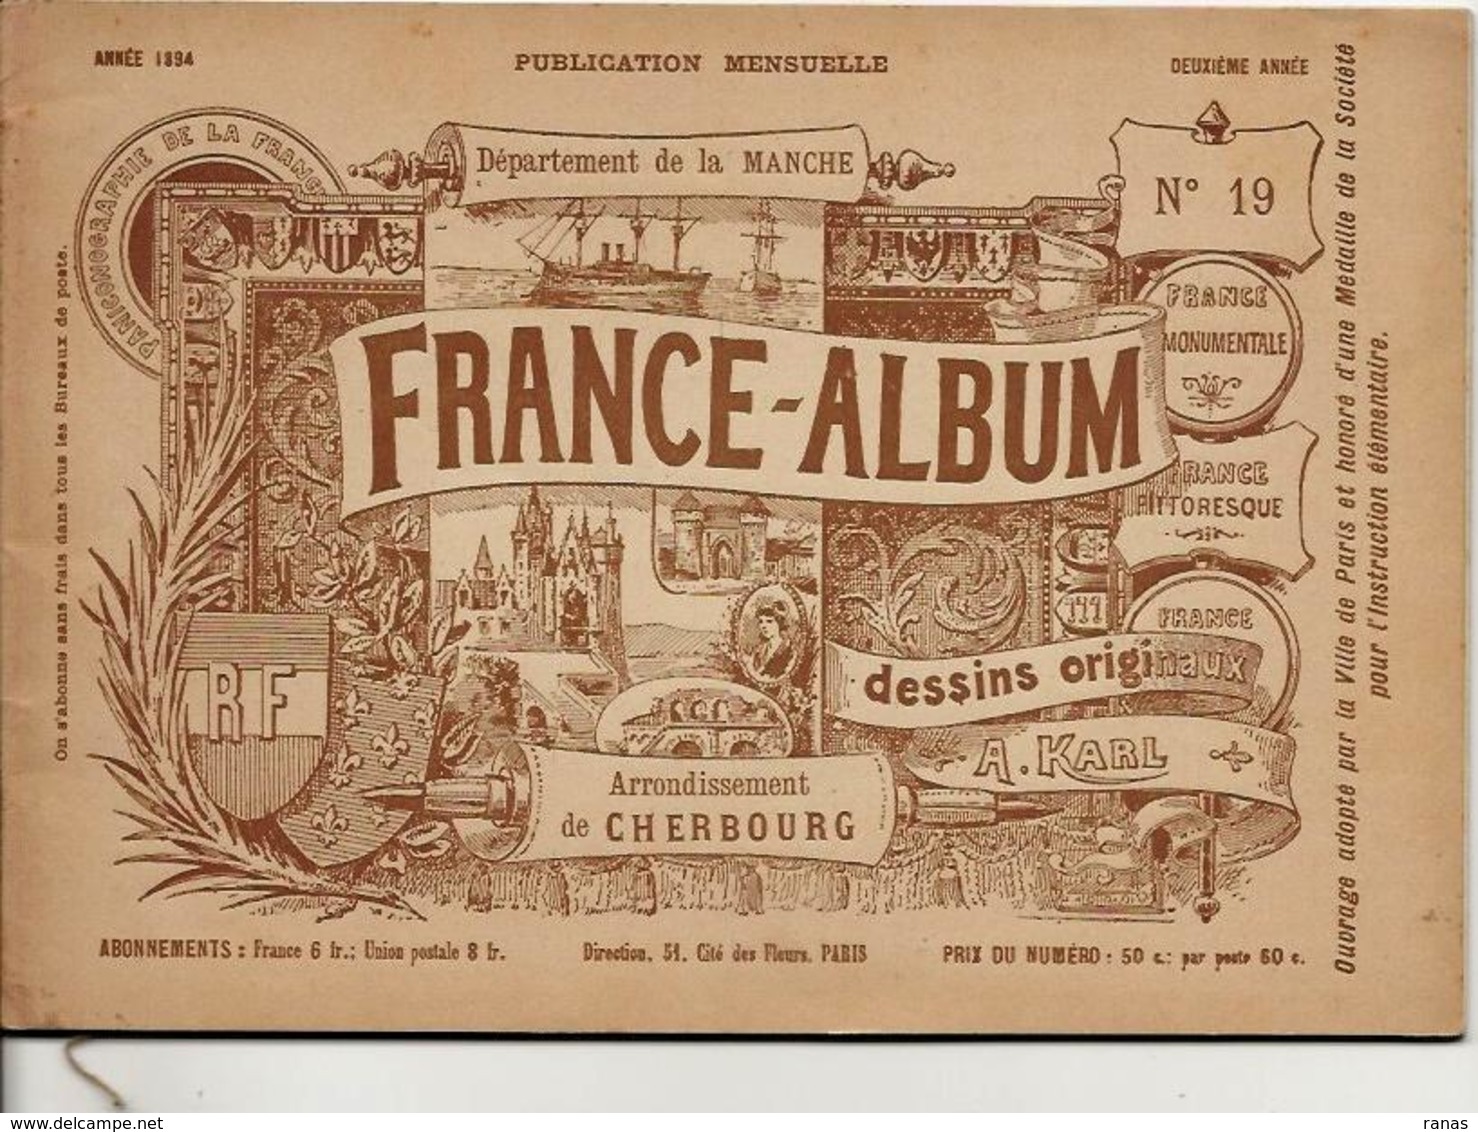 Manche 50 France Album De A. KARL, Carte Gravures Texte Publicités 1894 - Dépliants Touristiques